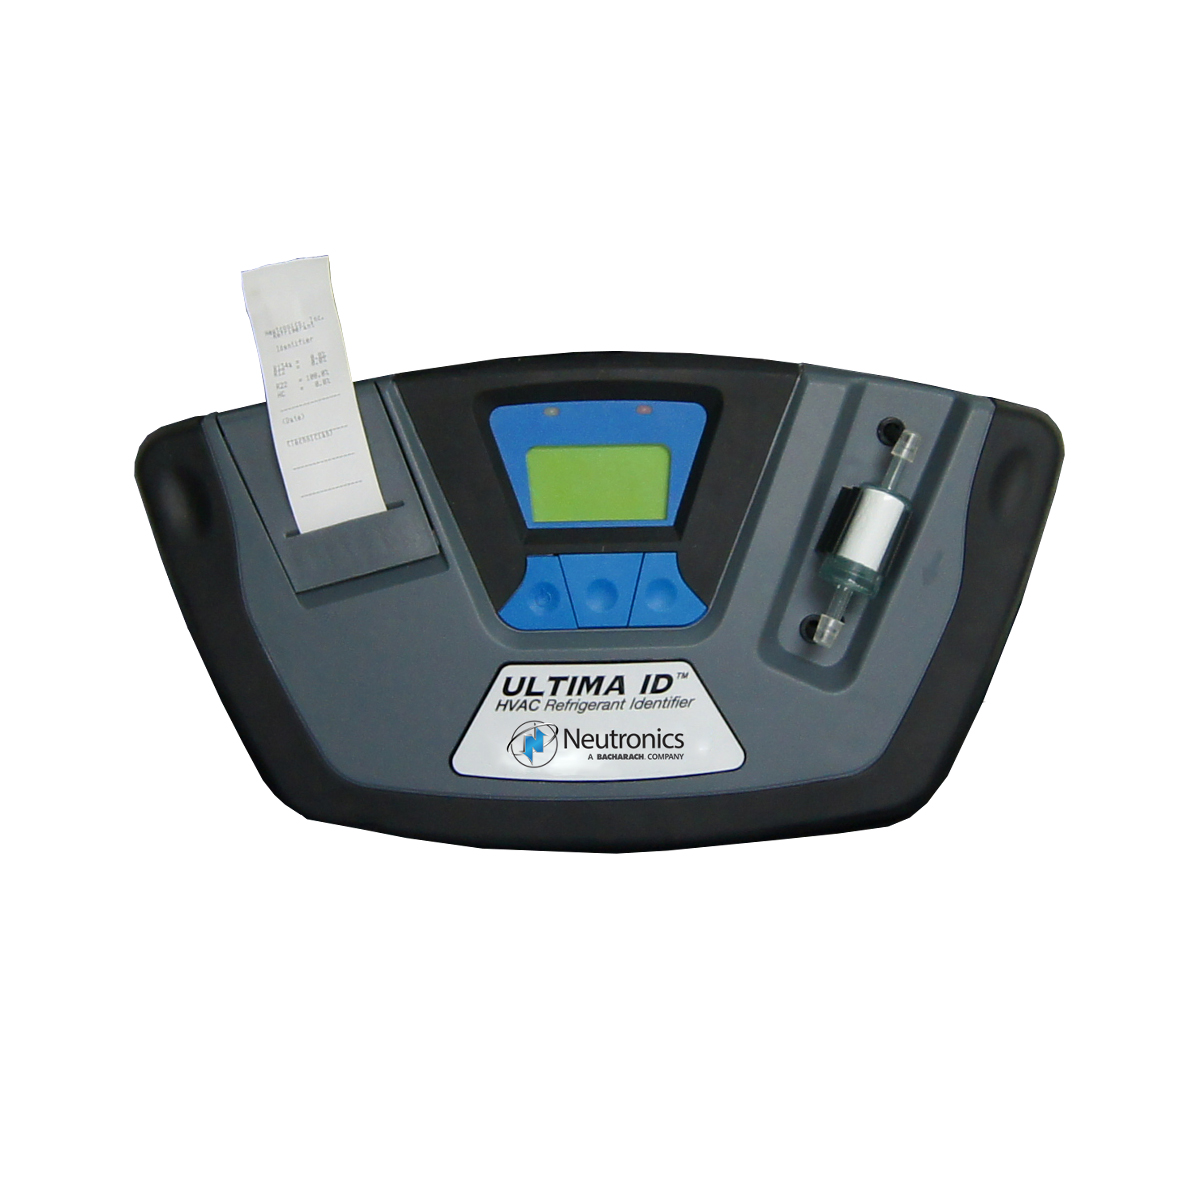 Ultima ID analizator rashladnog sredstva za primjenu HVAC-R